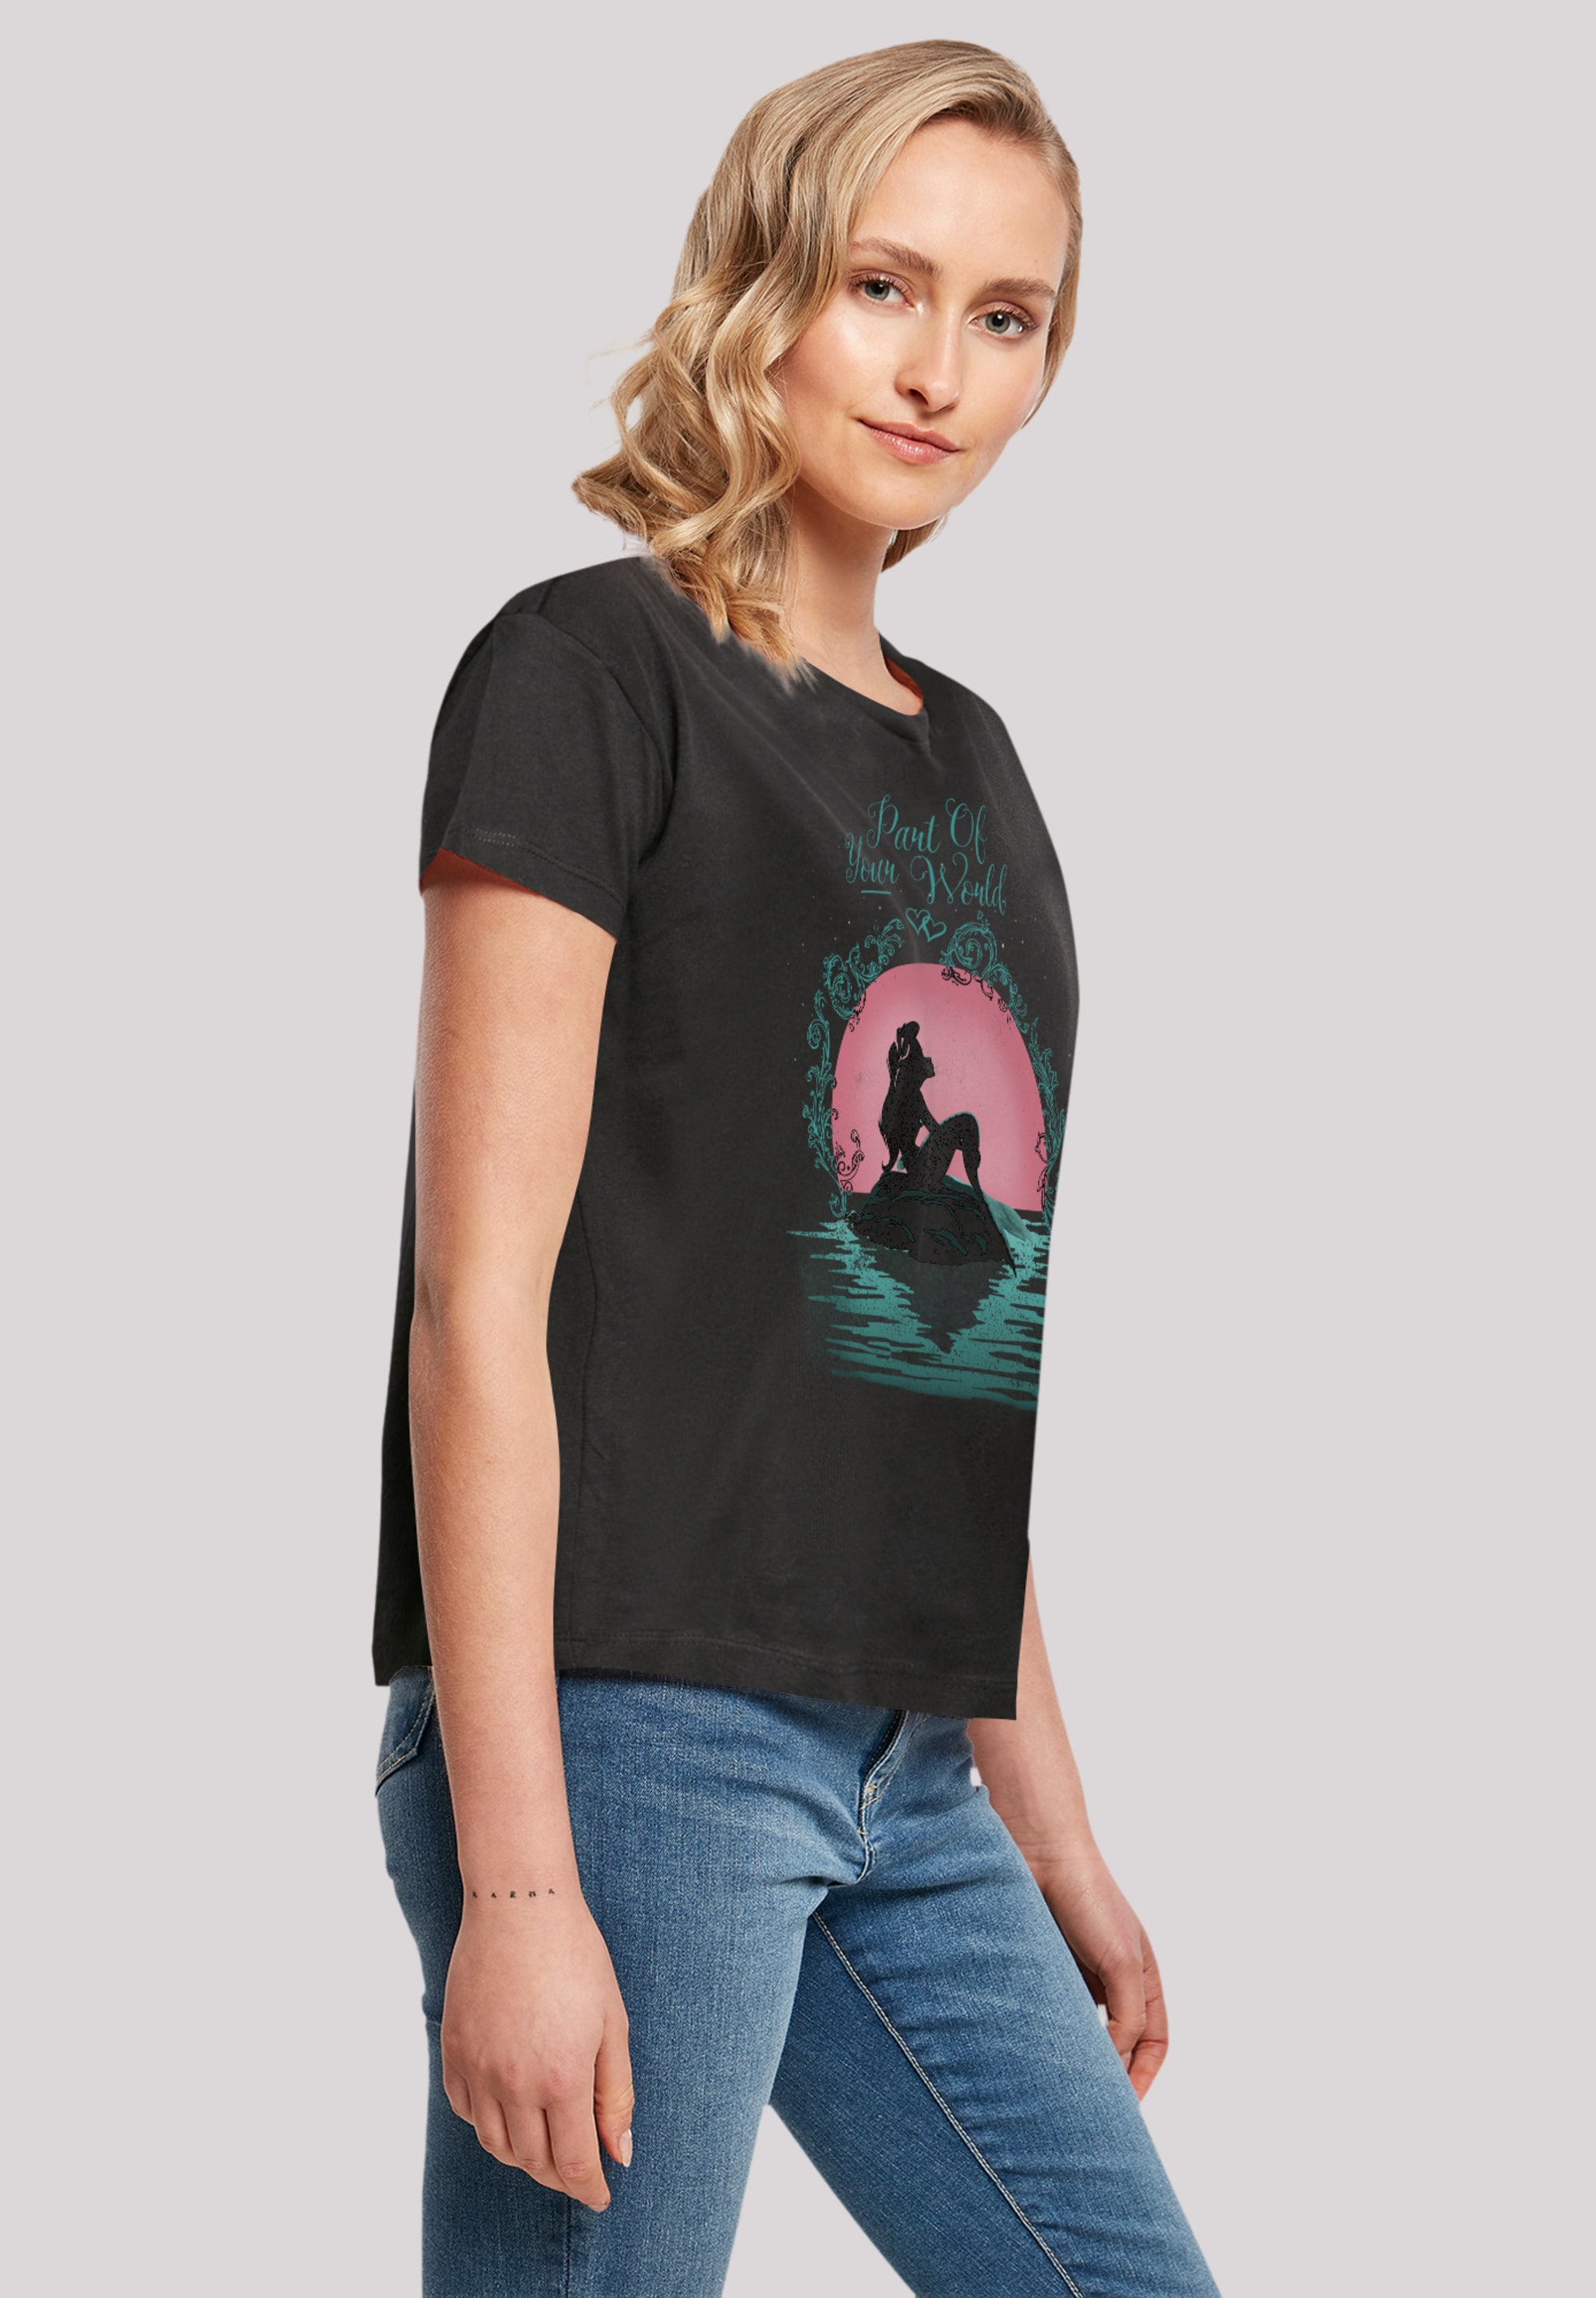 F4NT4STIC T-Shirt Part Qualität World«, Of »Disney Premium Arielle die BAUR bestellen Meerjungfrau | Your